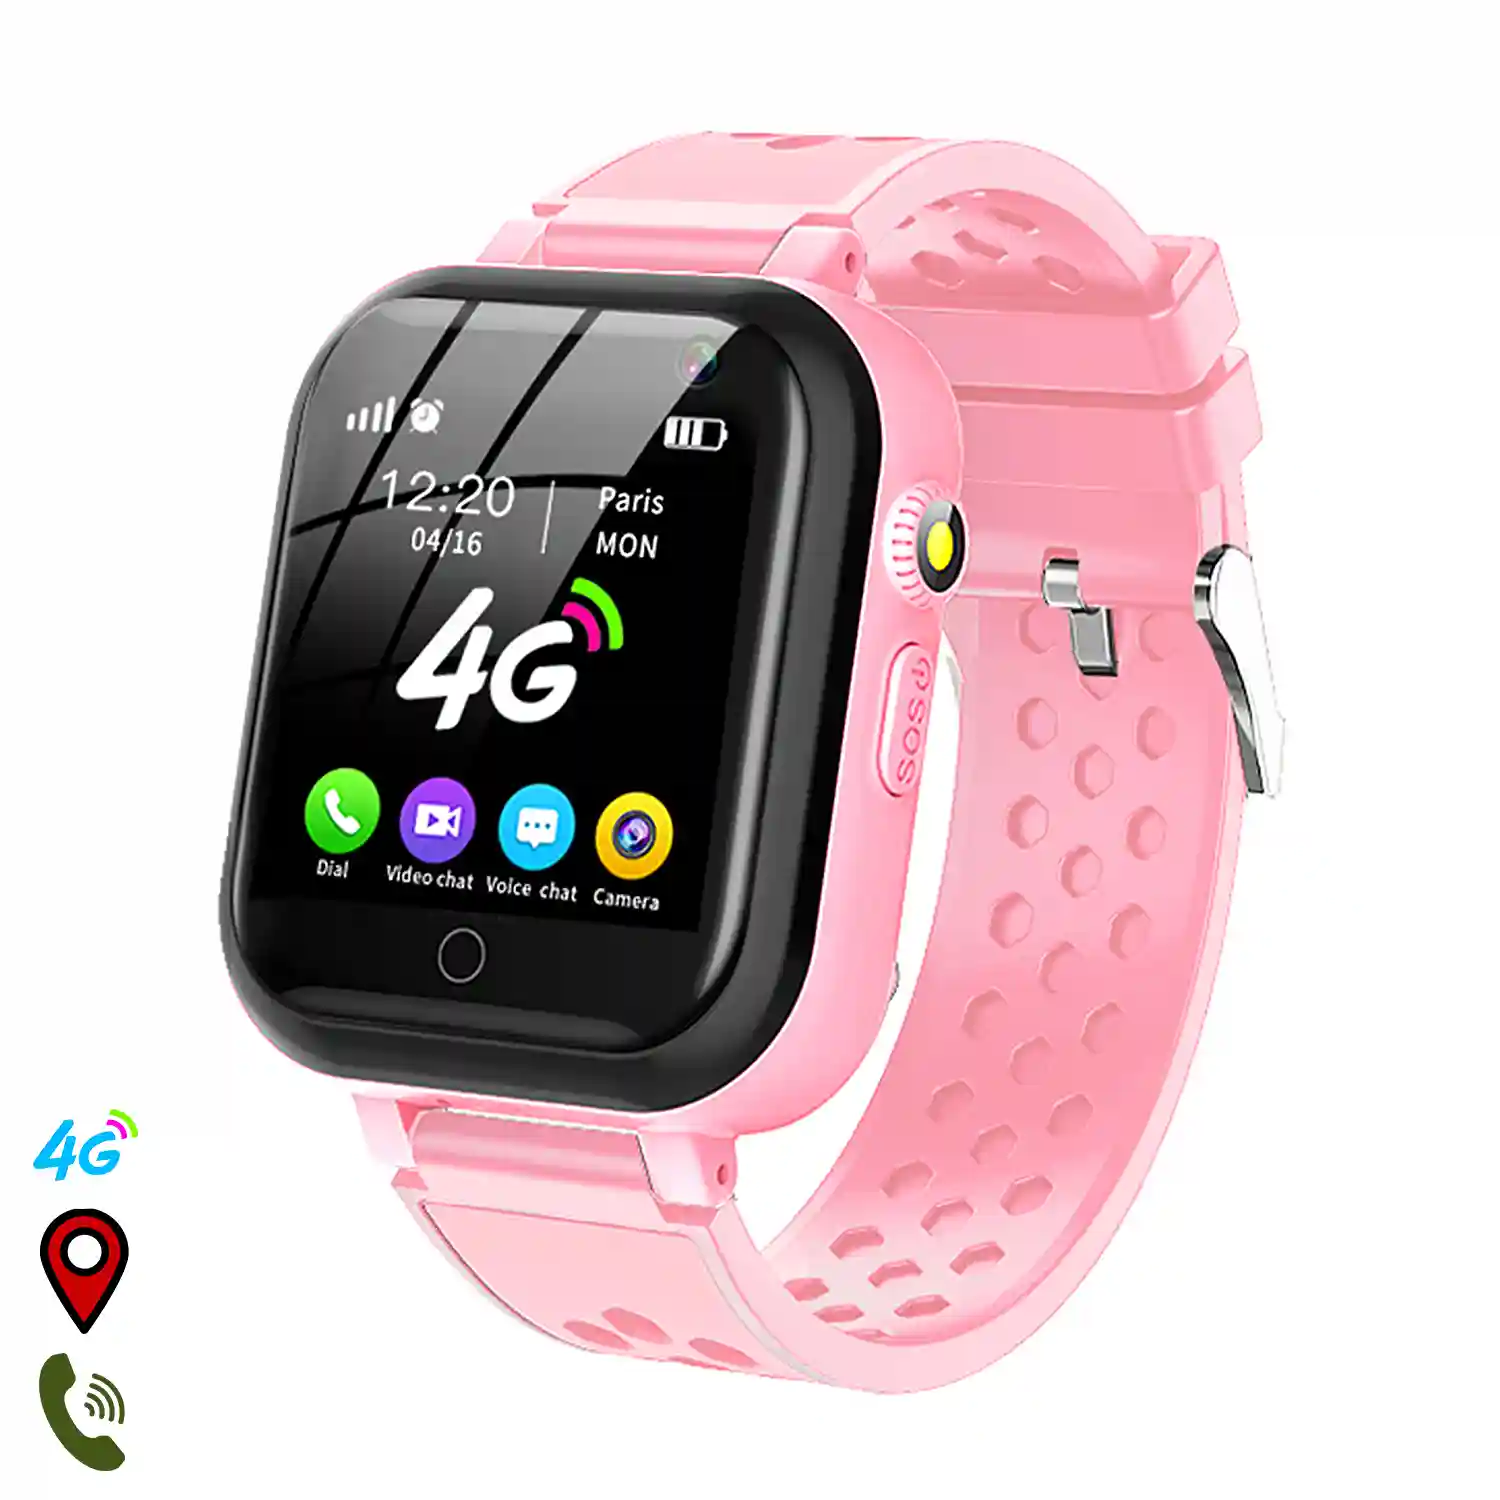 Smartwatch S88 localizador GPS, AGPS y LBS. Especial personas